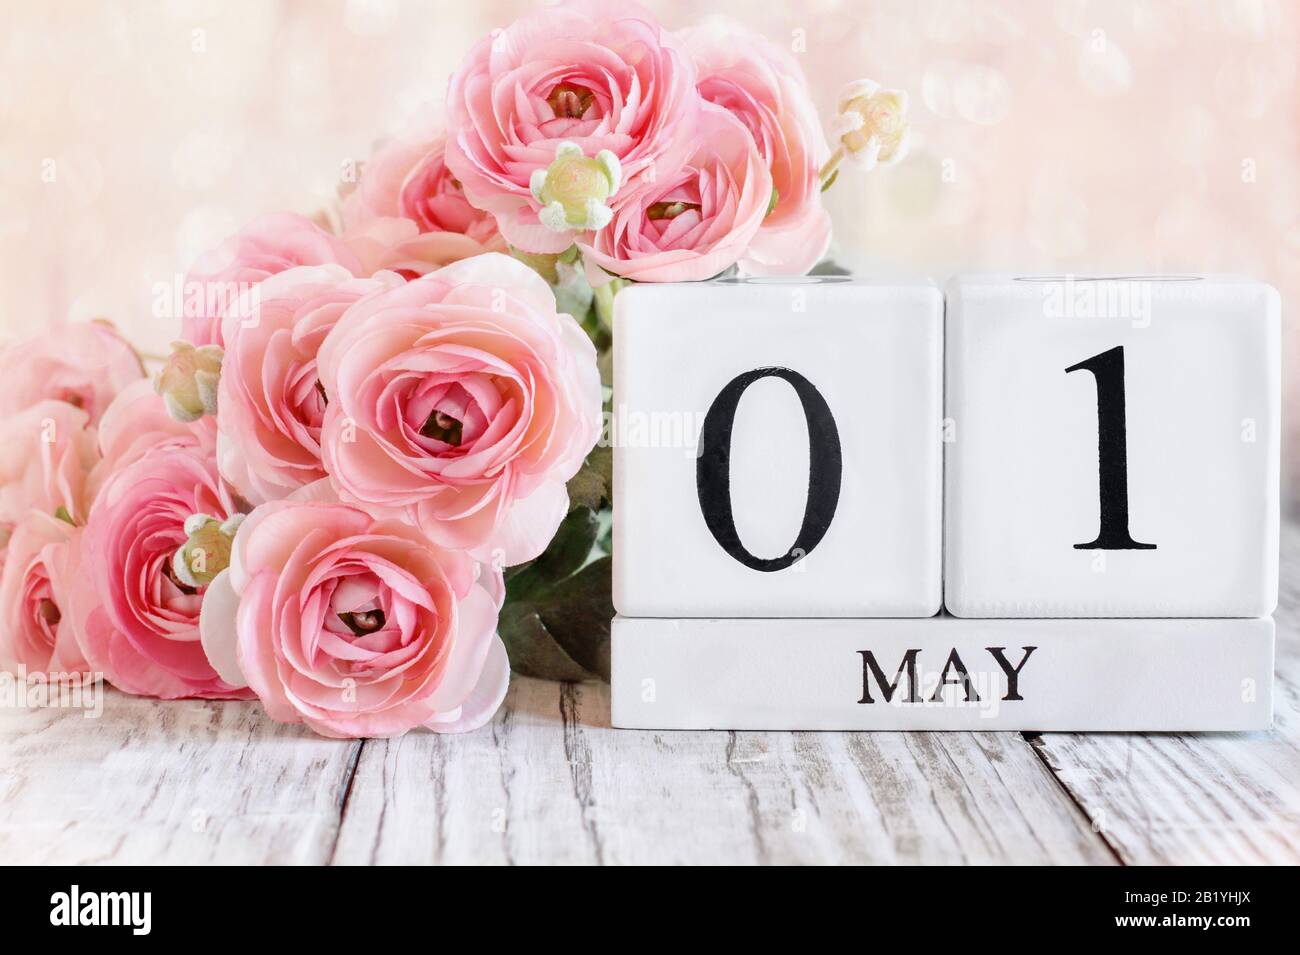 Blocs calendrier en bois blanc avec la date du 1 mai et fleurs roses de ranunculus sur une table en bois. Mise au point sélective avec arrière-plan flou. Banque D'Images